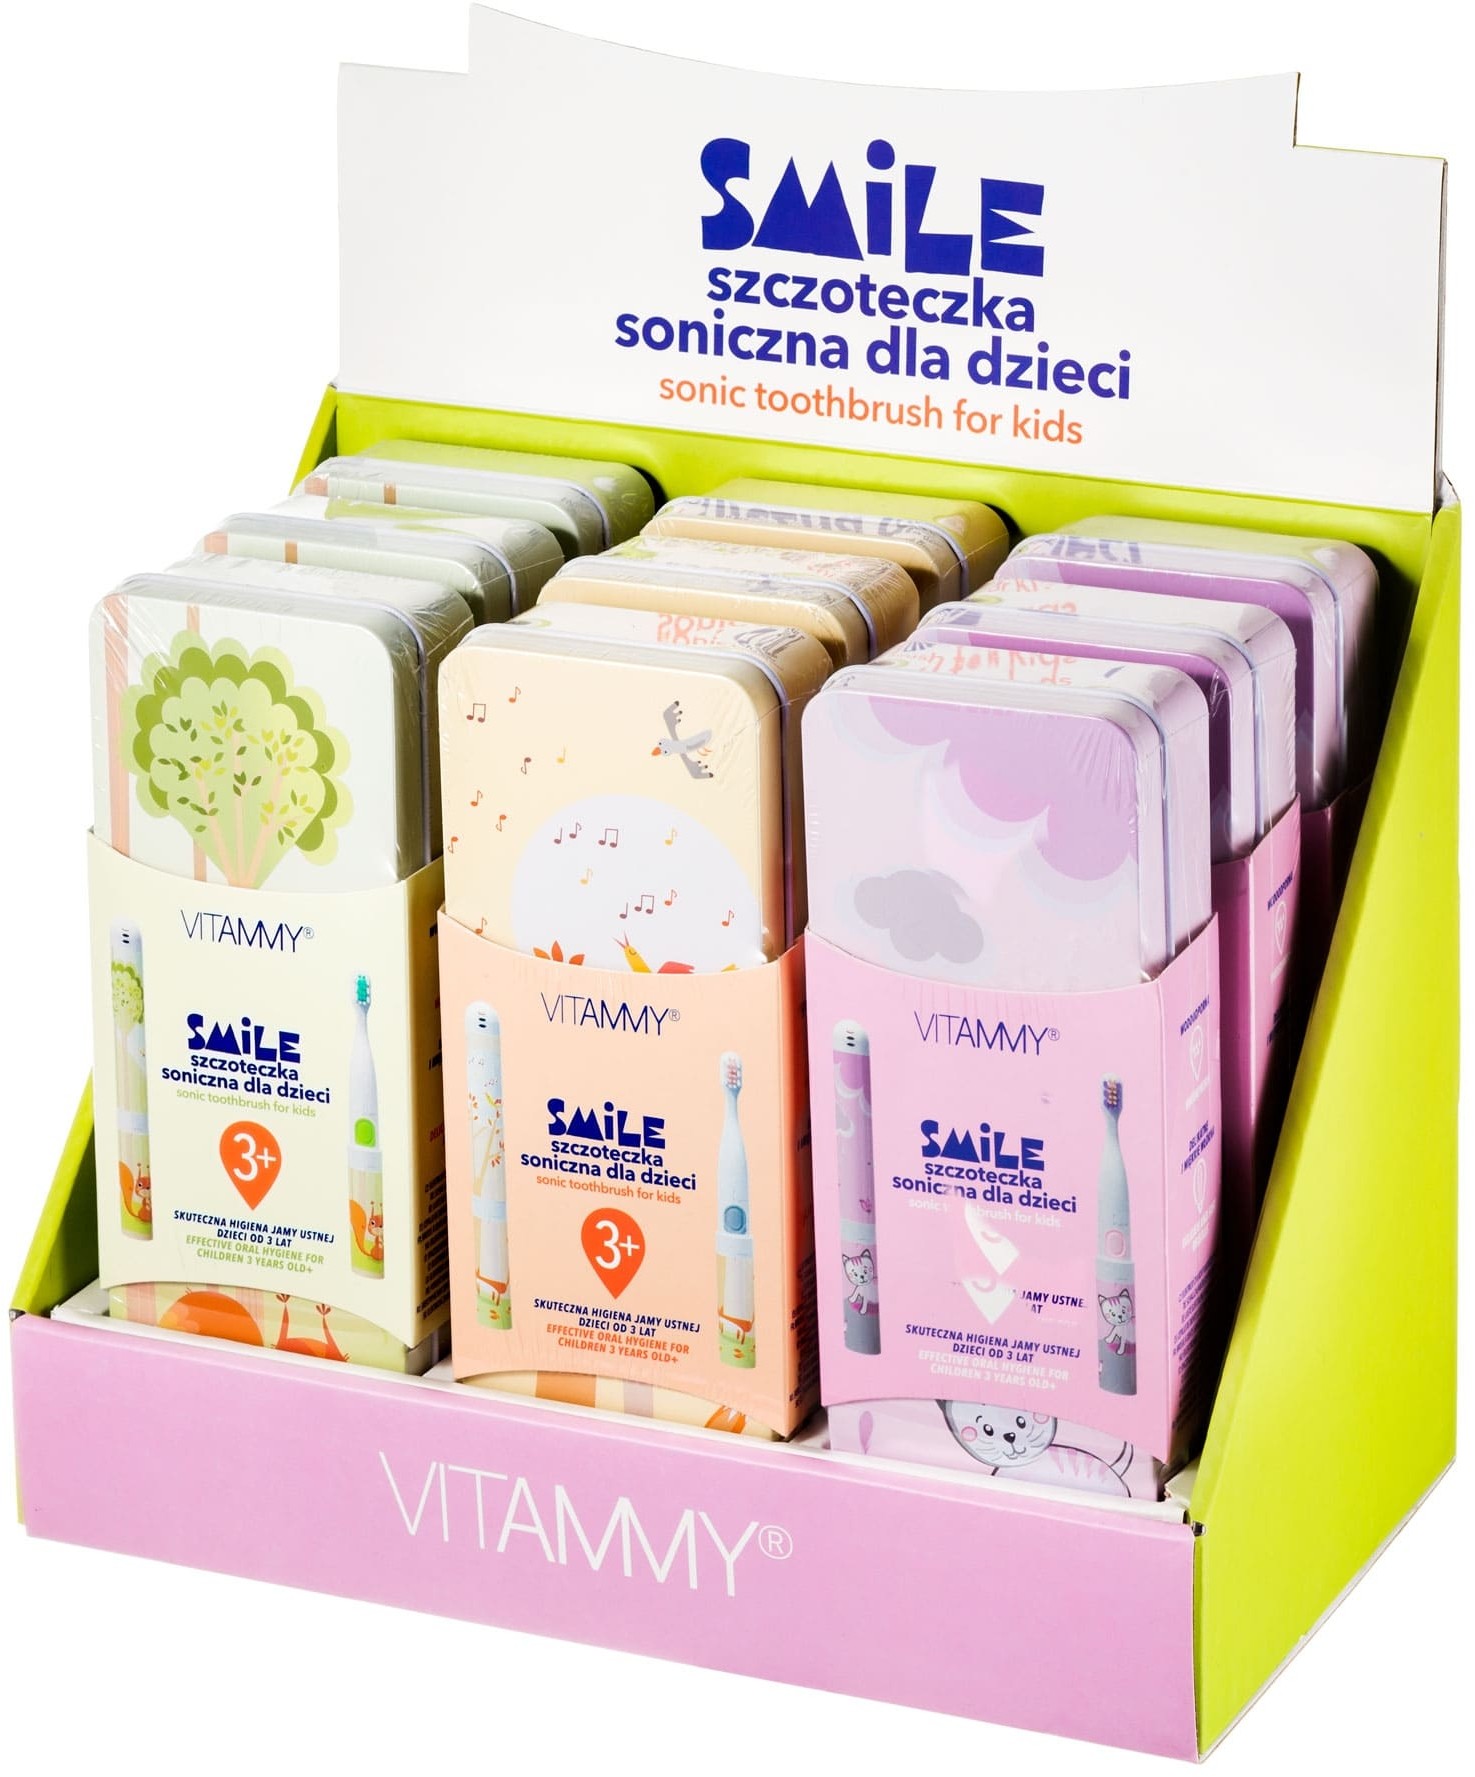 VITAMMY VITAMMY Smile/ display 9 szt (kot, wiewiórka, lisek) Szczoteczka soniczna dla dzieci z zębami mlecznymi 3 + VITAMMY TB804